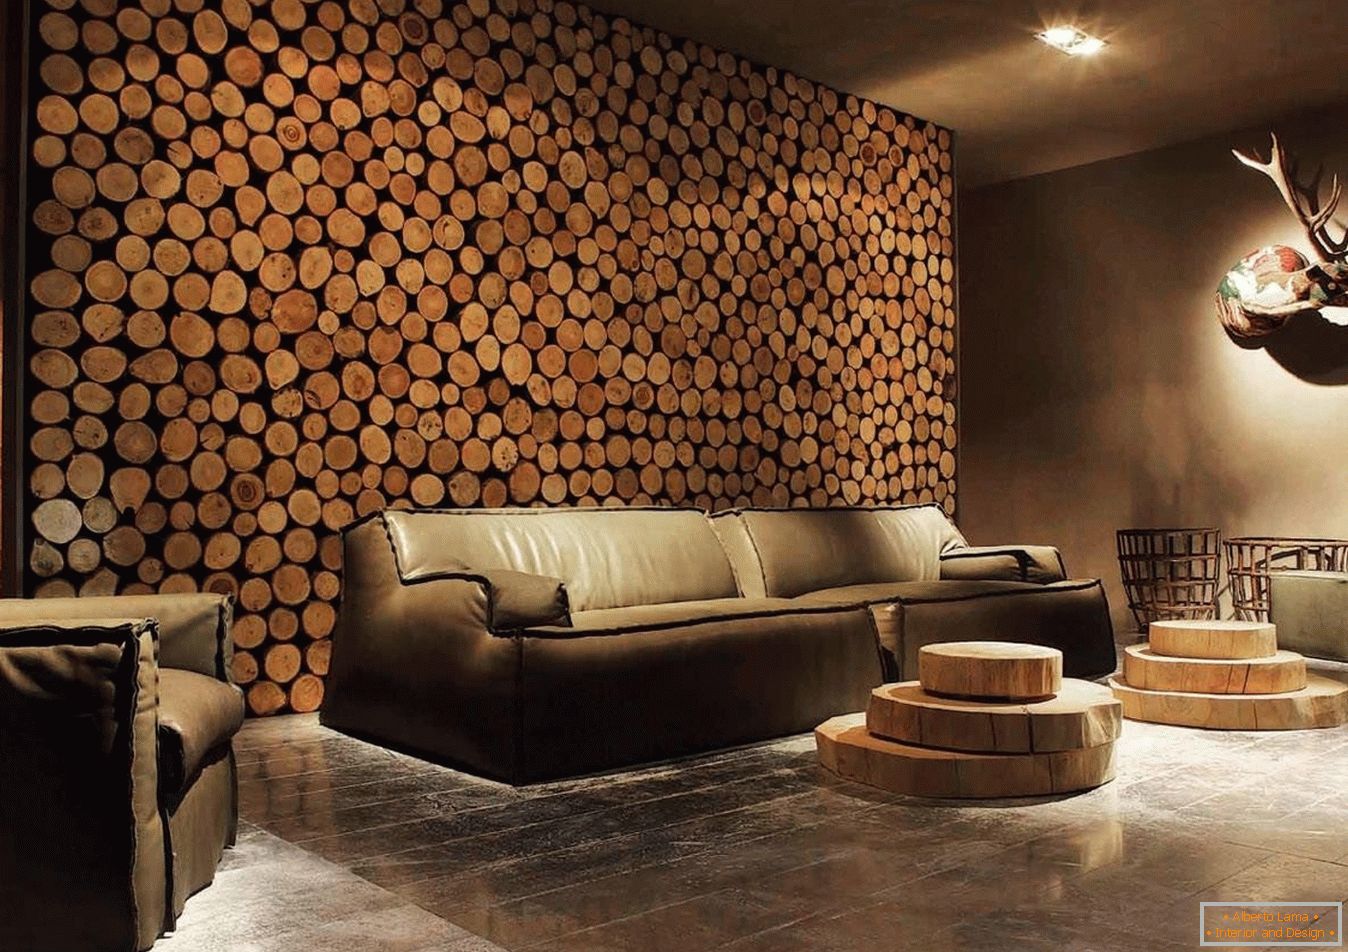 Spilas de madera de madera como decoración de las paredes de la sala